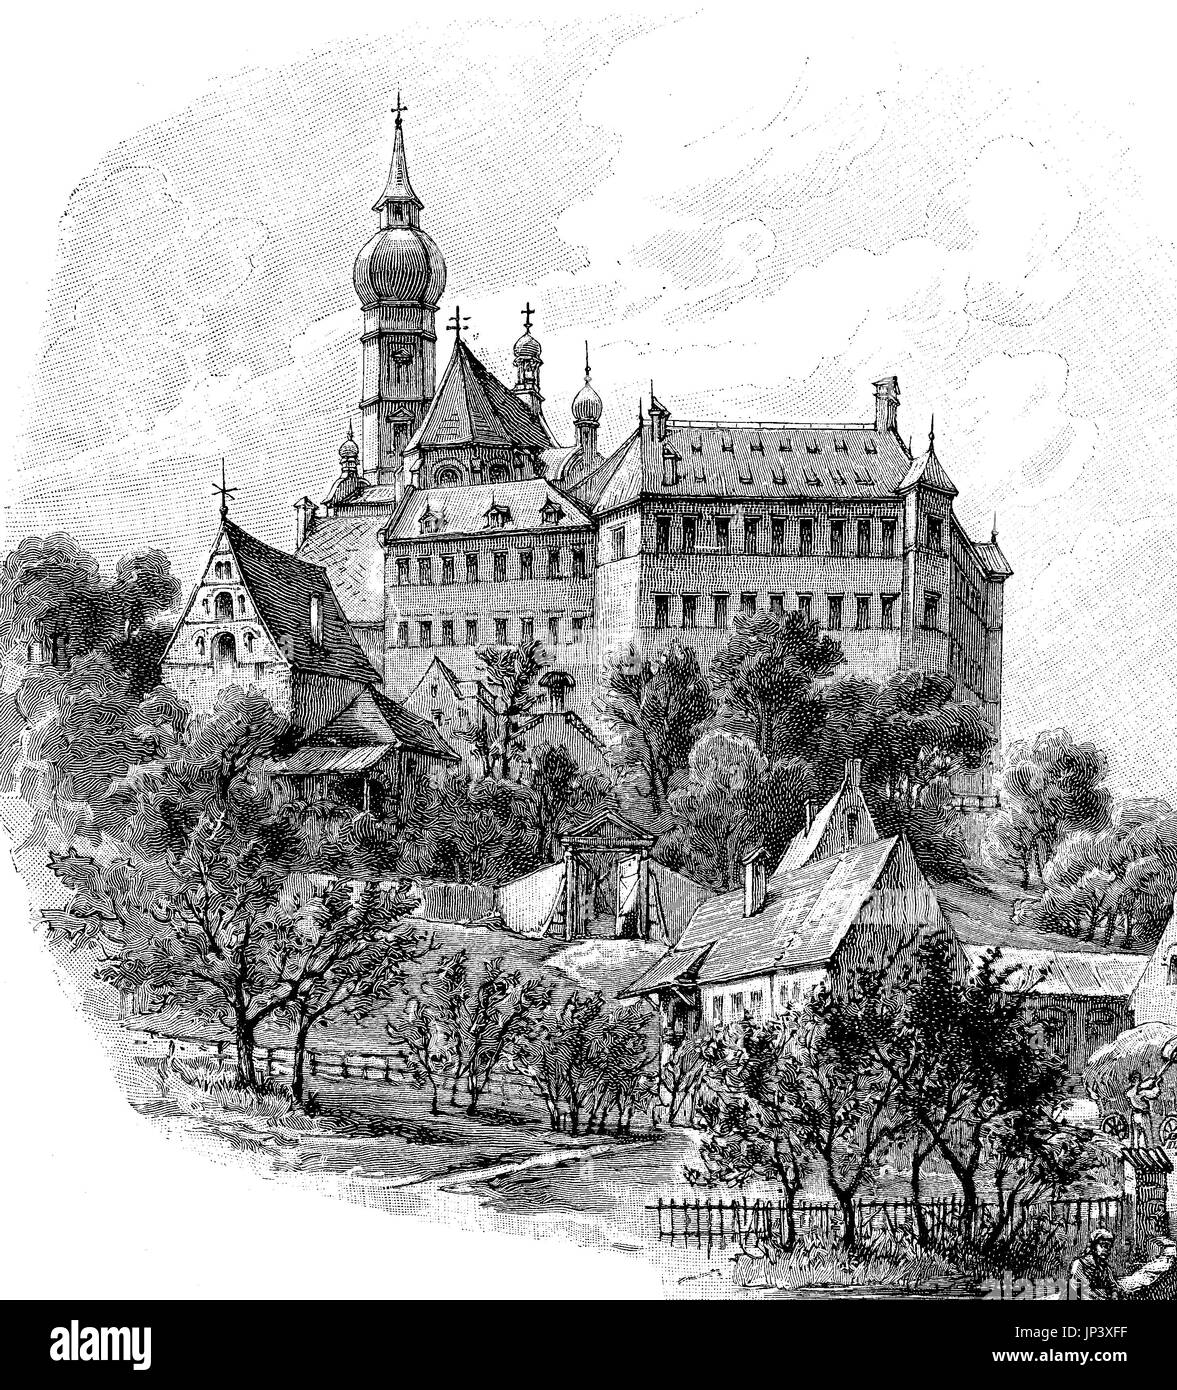 Le monastère Andechs, Bavière, Allemagne, l'amélioration numérique reproduction d'une gravure sur bois à partir de la publication de l'année 1888 Banque D'Images